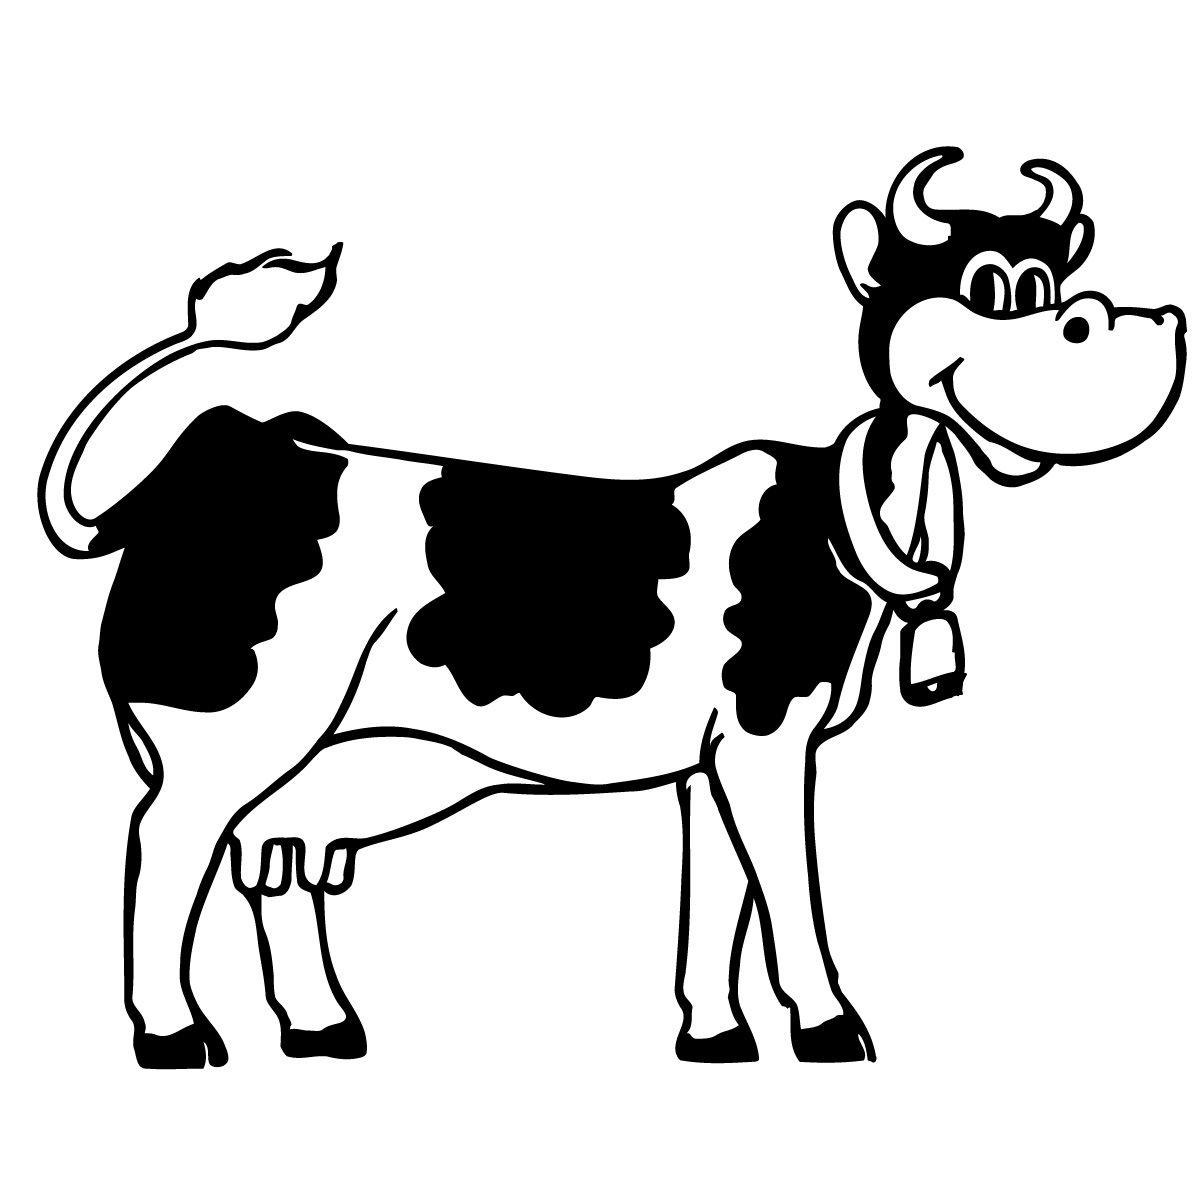 Hình ảnh hoạt hình con bò miễn phí 1200x1200, Tải xuống Clip nghệ thuật miễn phí, Clip nghệ thuật miễn phí trên Thư viện Clipart